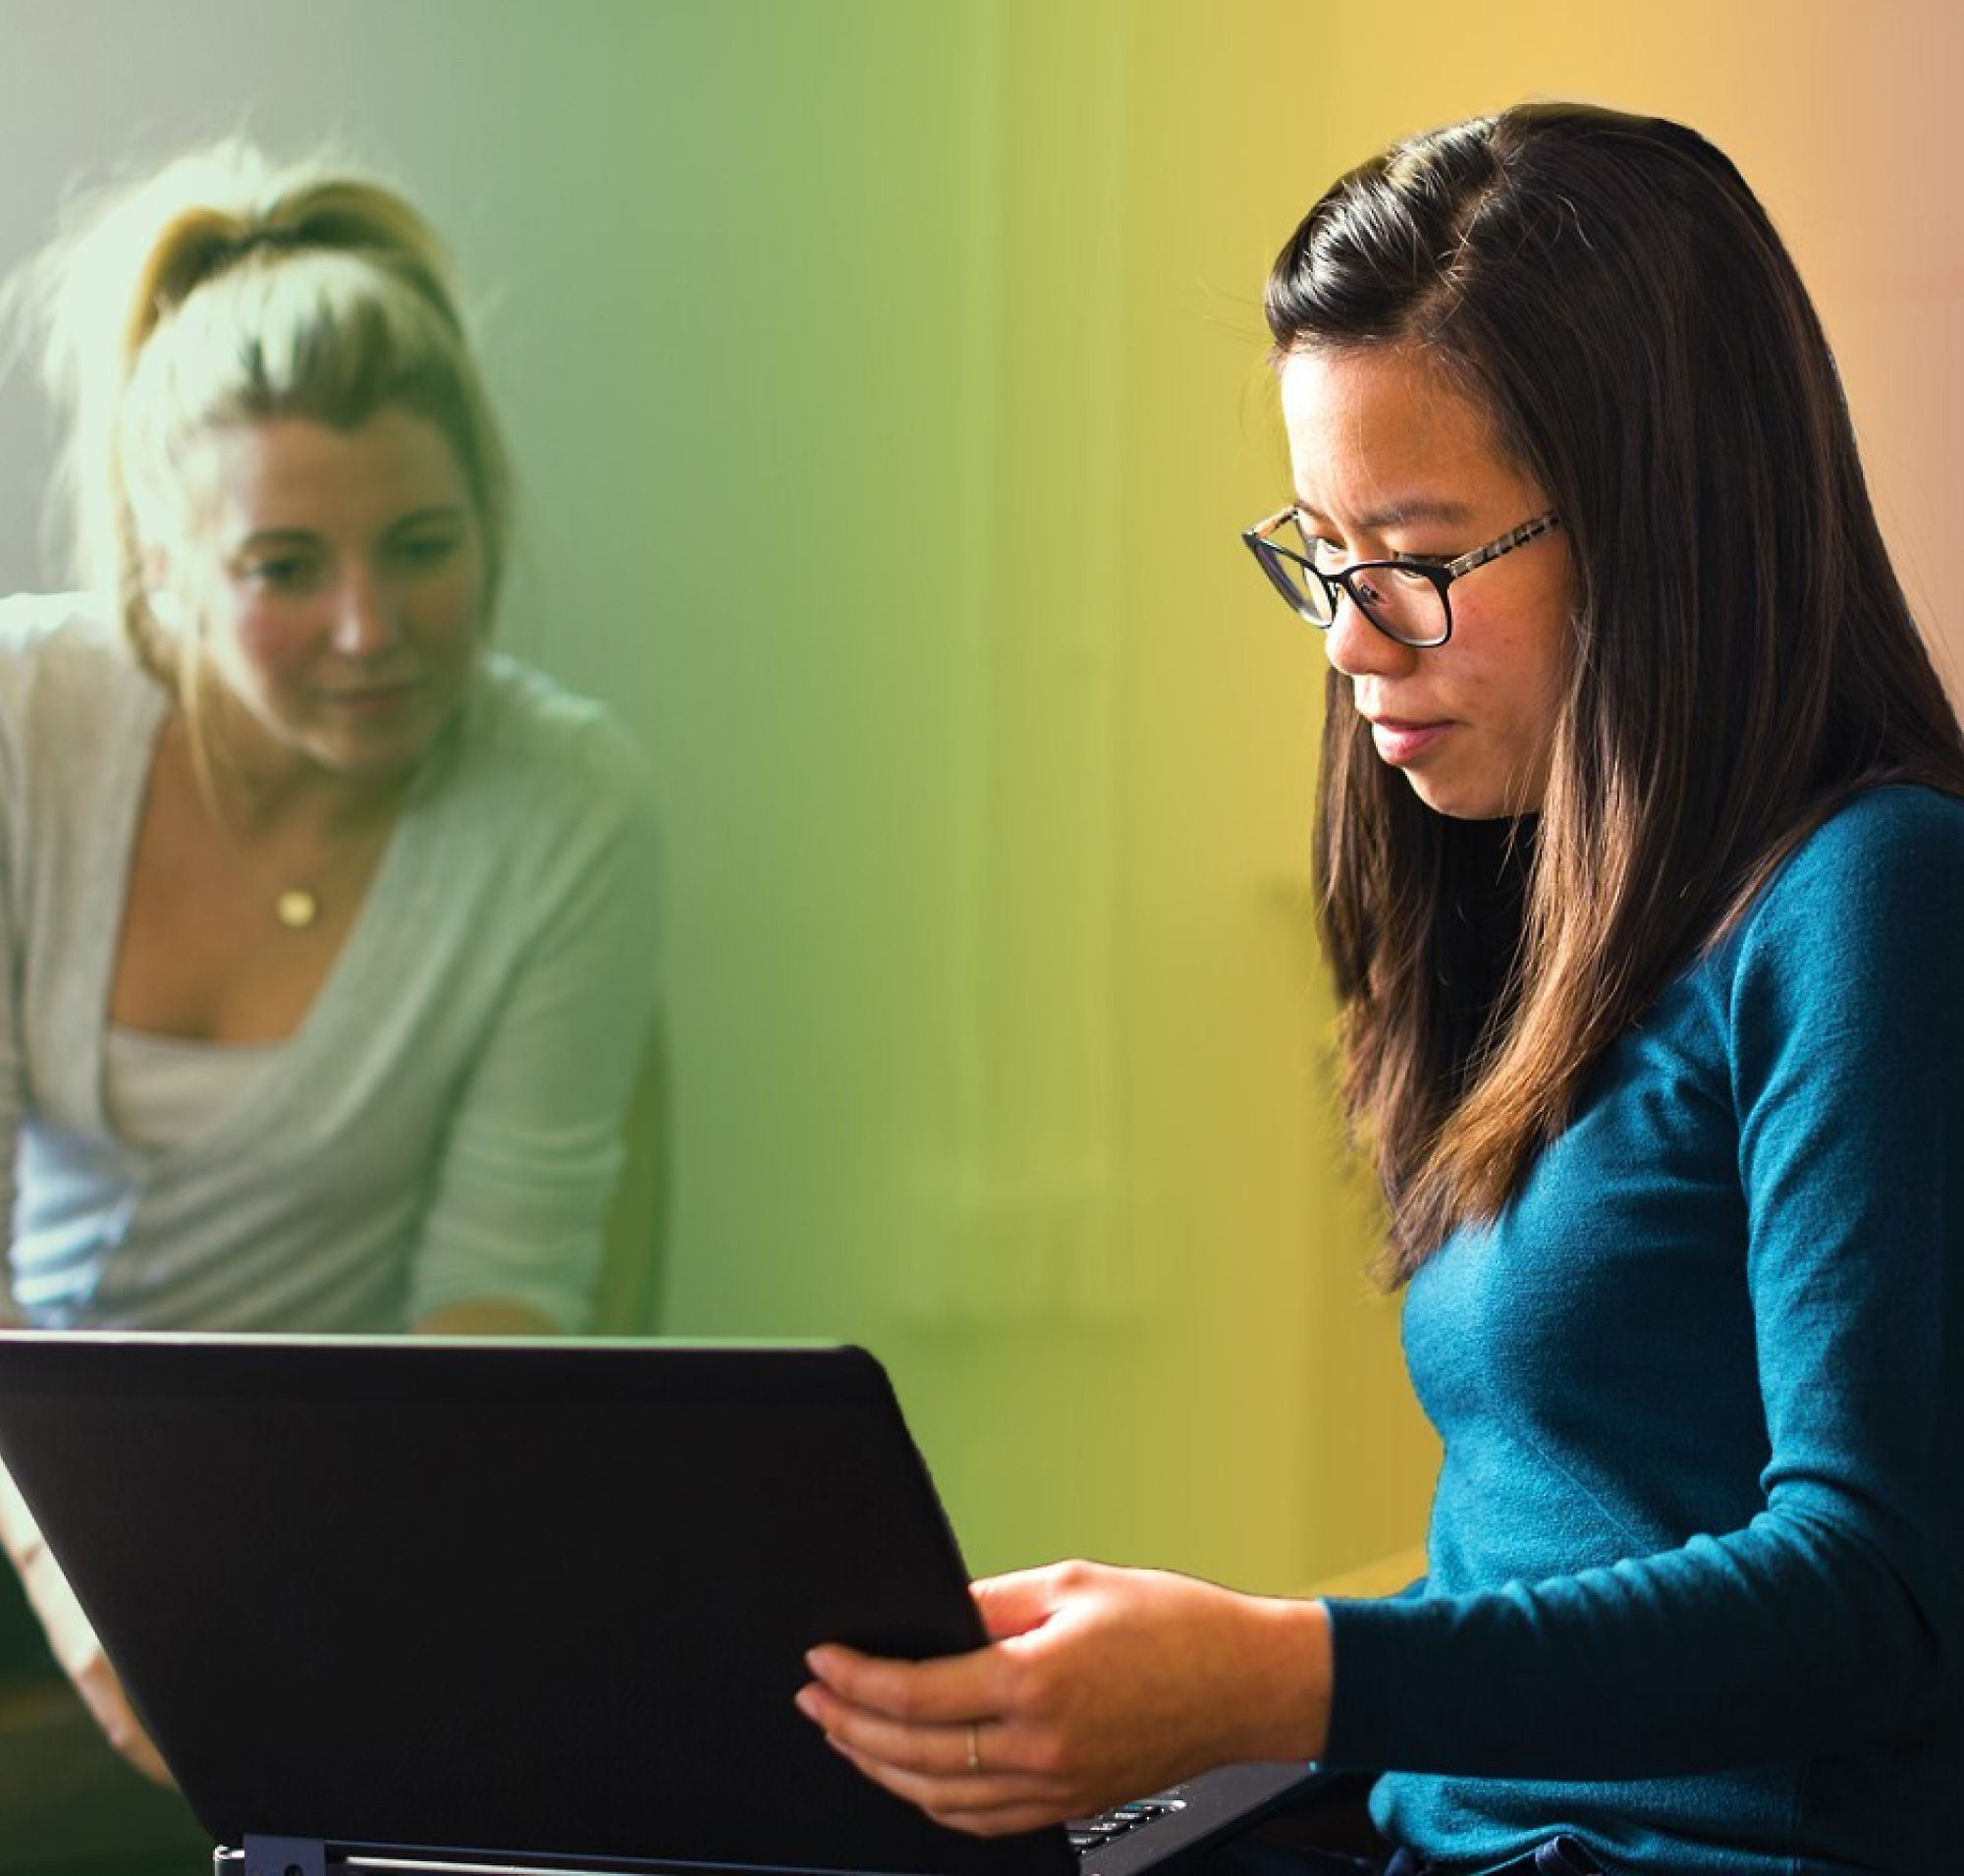 Dvije žene, jedna plave kose, a druga s naočalama rade na prijenosnom računalu u šareno osvijetljenoj sobi.